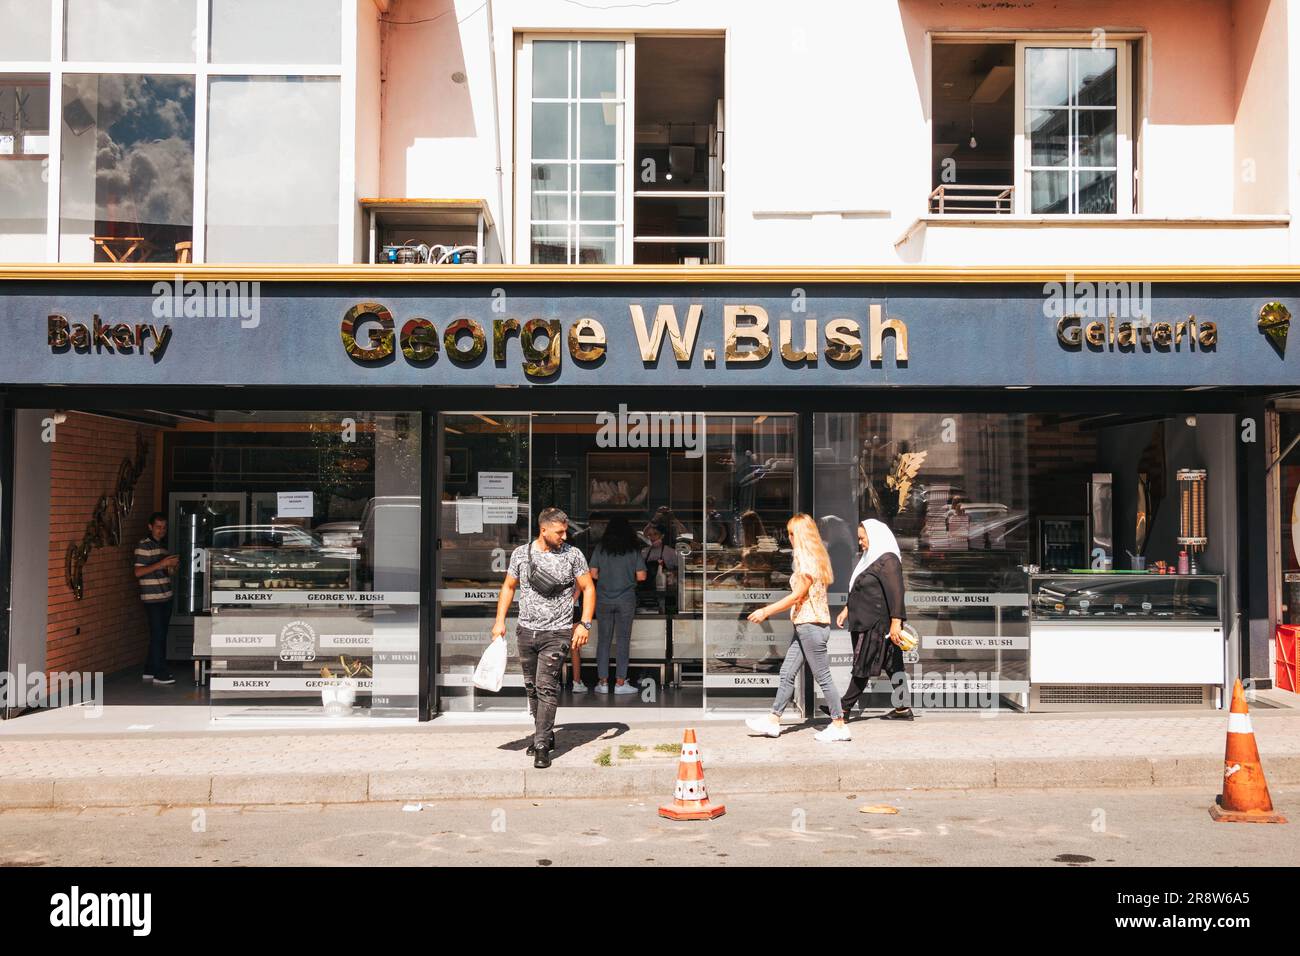 Die Bäckerei George W. Bush in Fushë Krujë, Albanien. Er war der erste US-Präsident, der Albanien nach dem Kommunismus besuchte und in dieser kleinen Stadt vorbeischaute Stockfoto